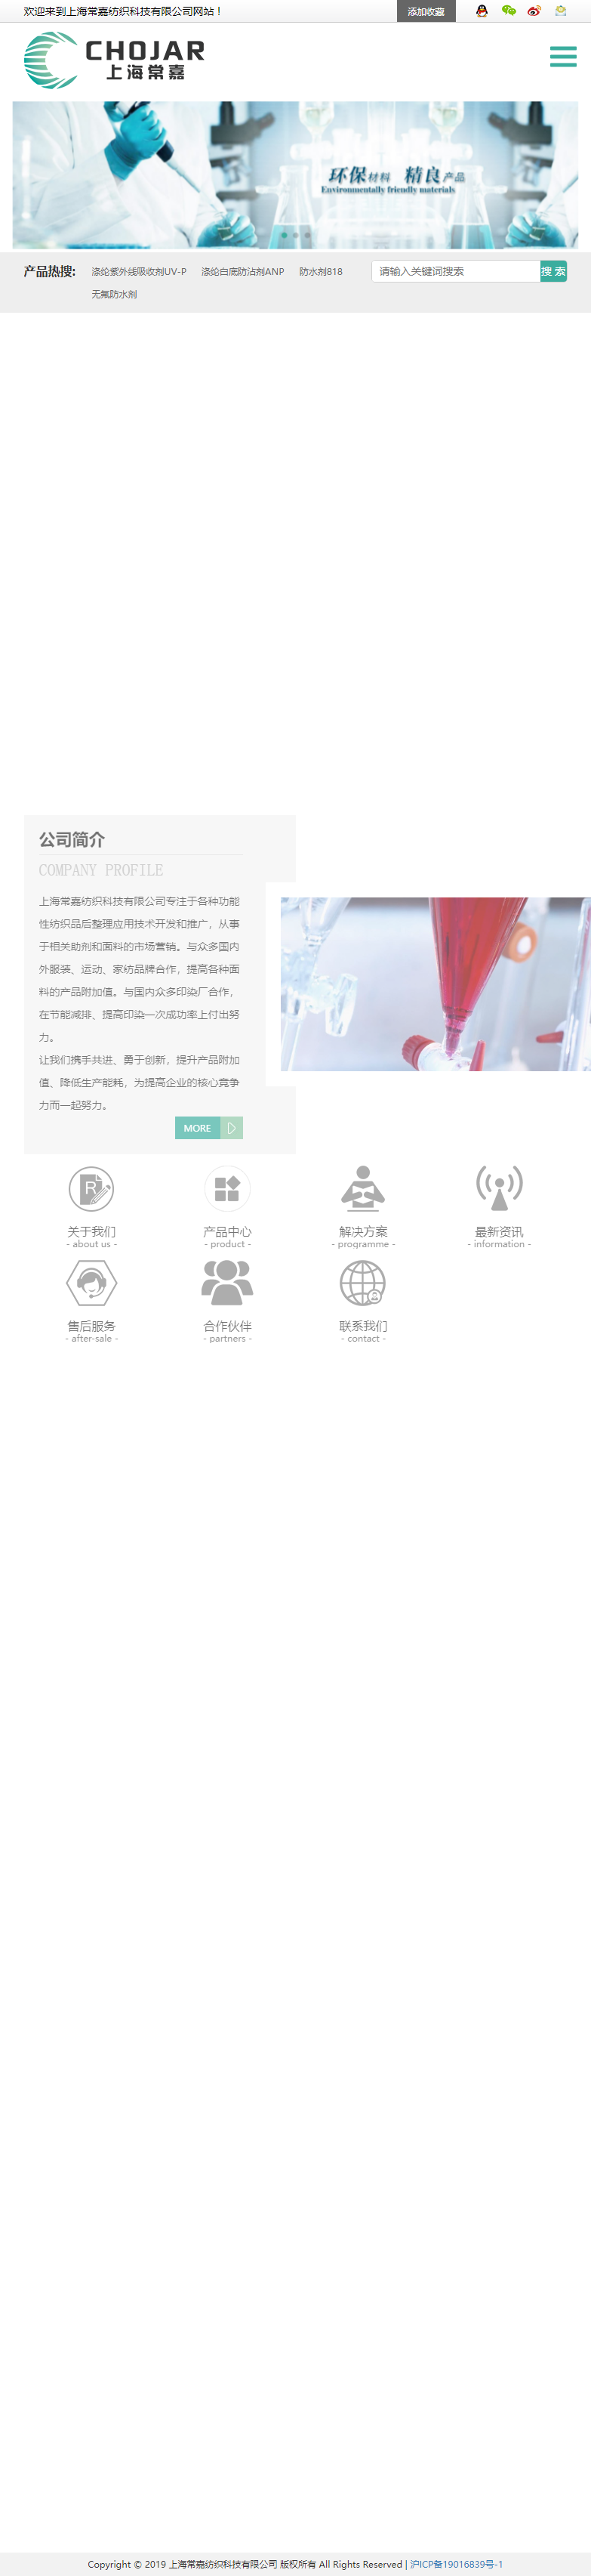 上海常嘉纺织科技有限公司网站案例